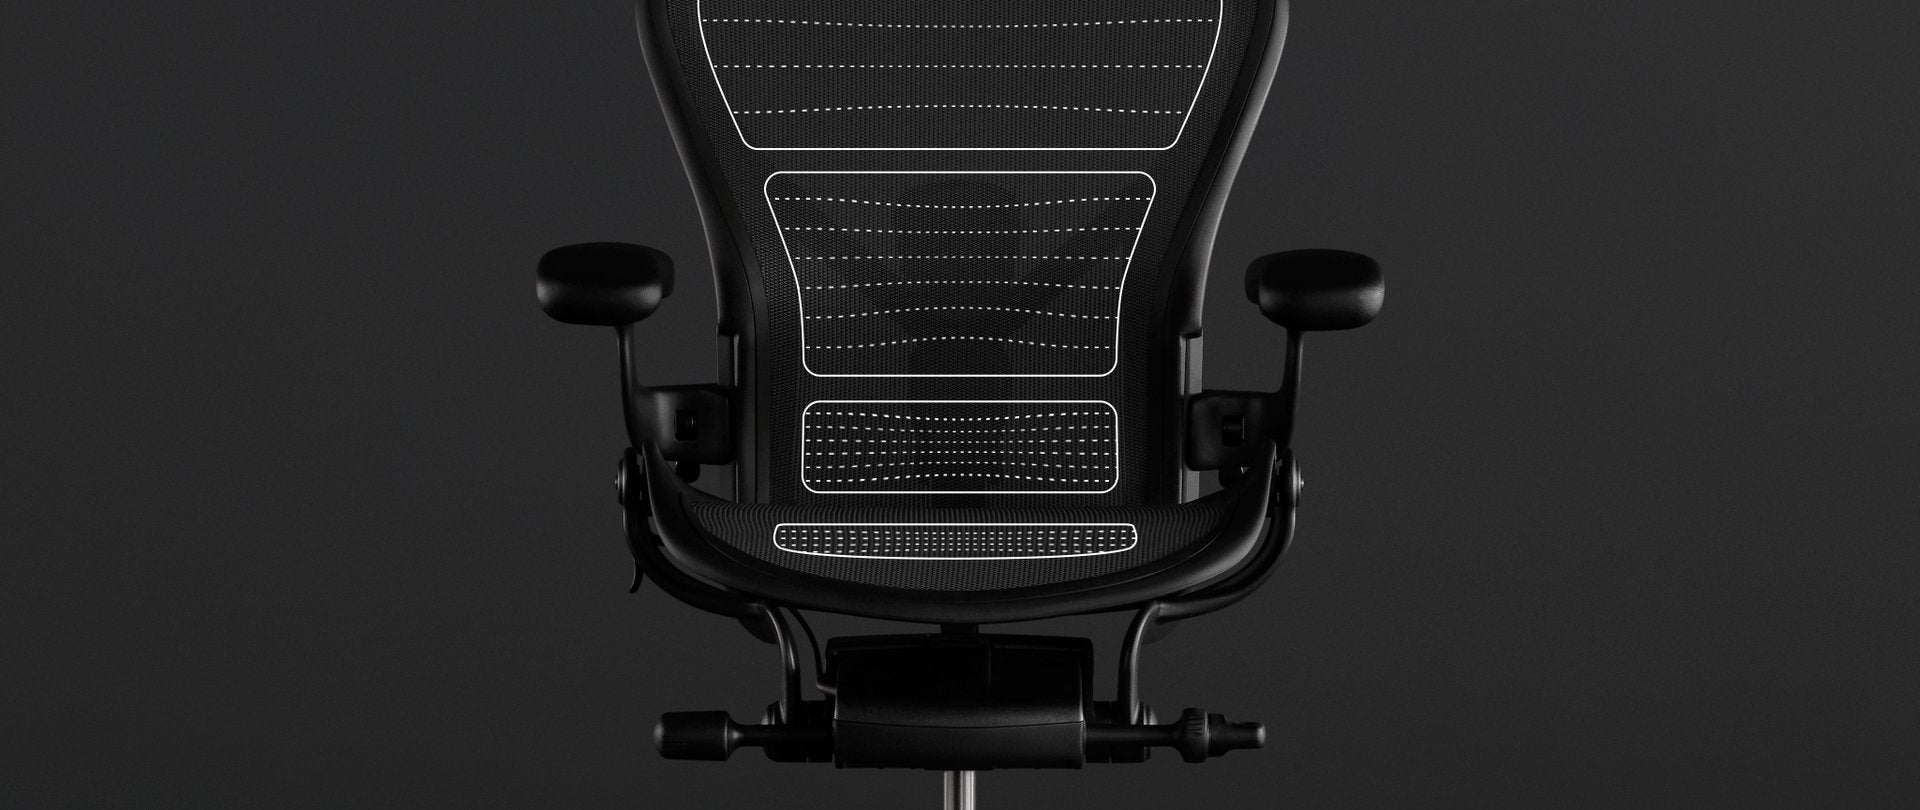 通过黑色Aeron座椅的动态效果图演示座椅上的悬架支撑材料8Z Pellicle的人体工程学优势。